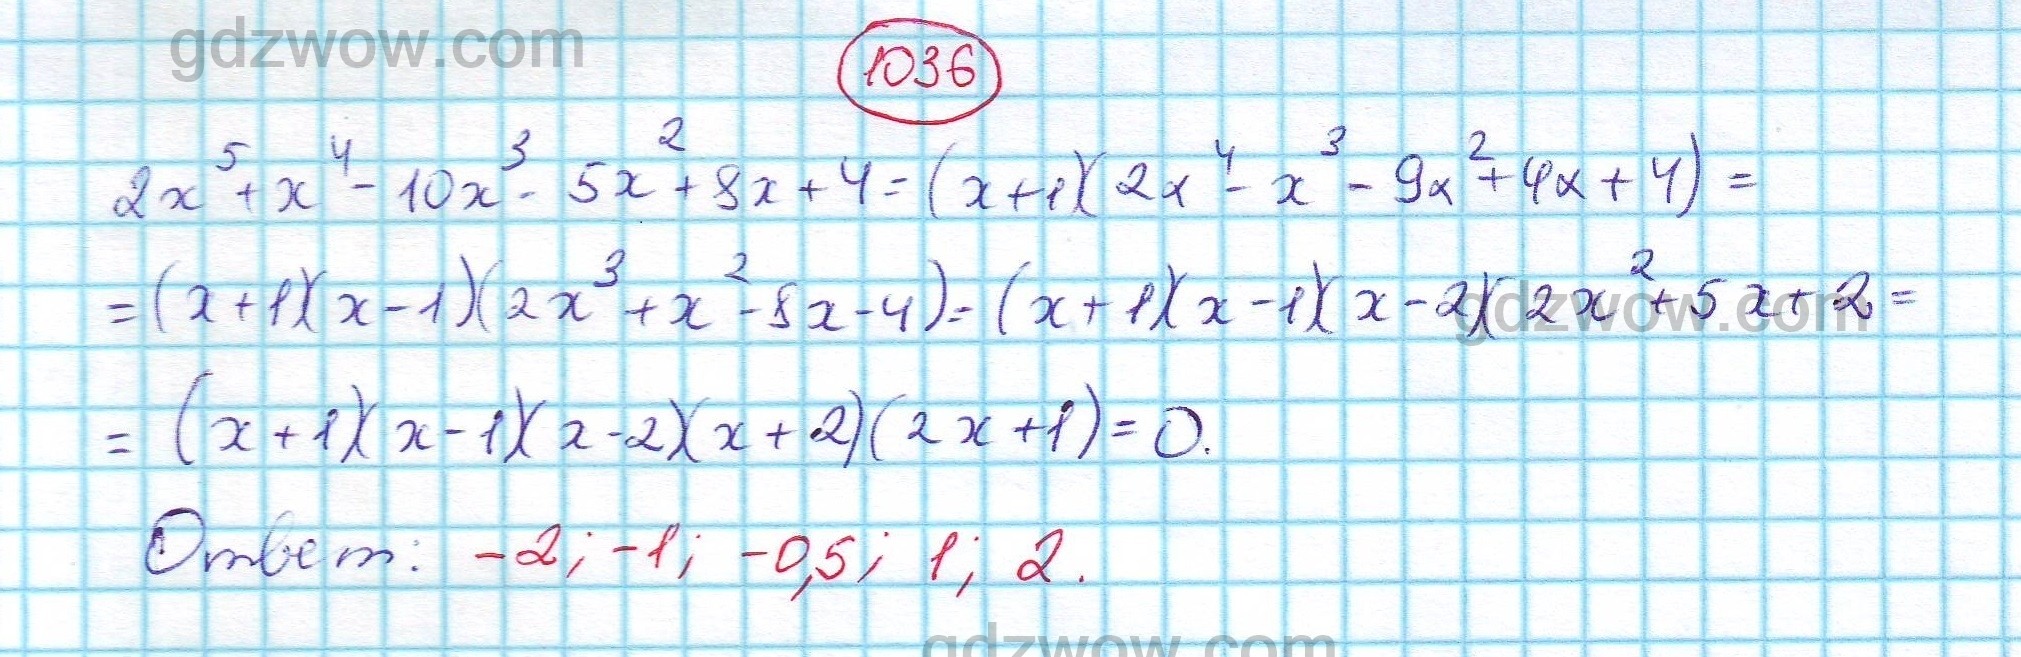 Математика 1 часть 6 класс номер 1036